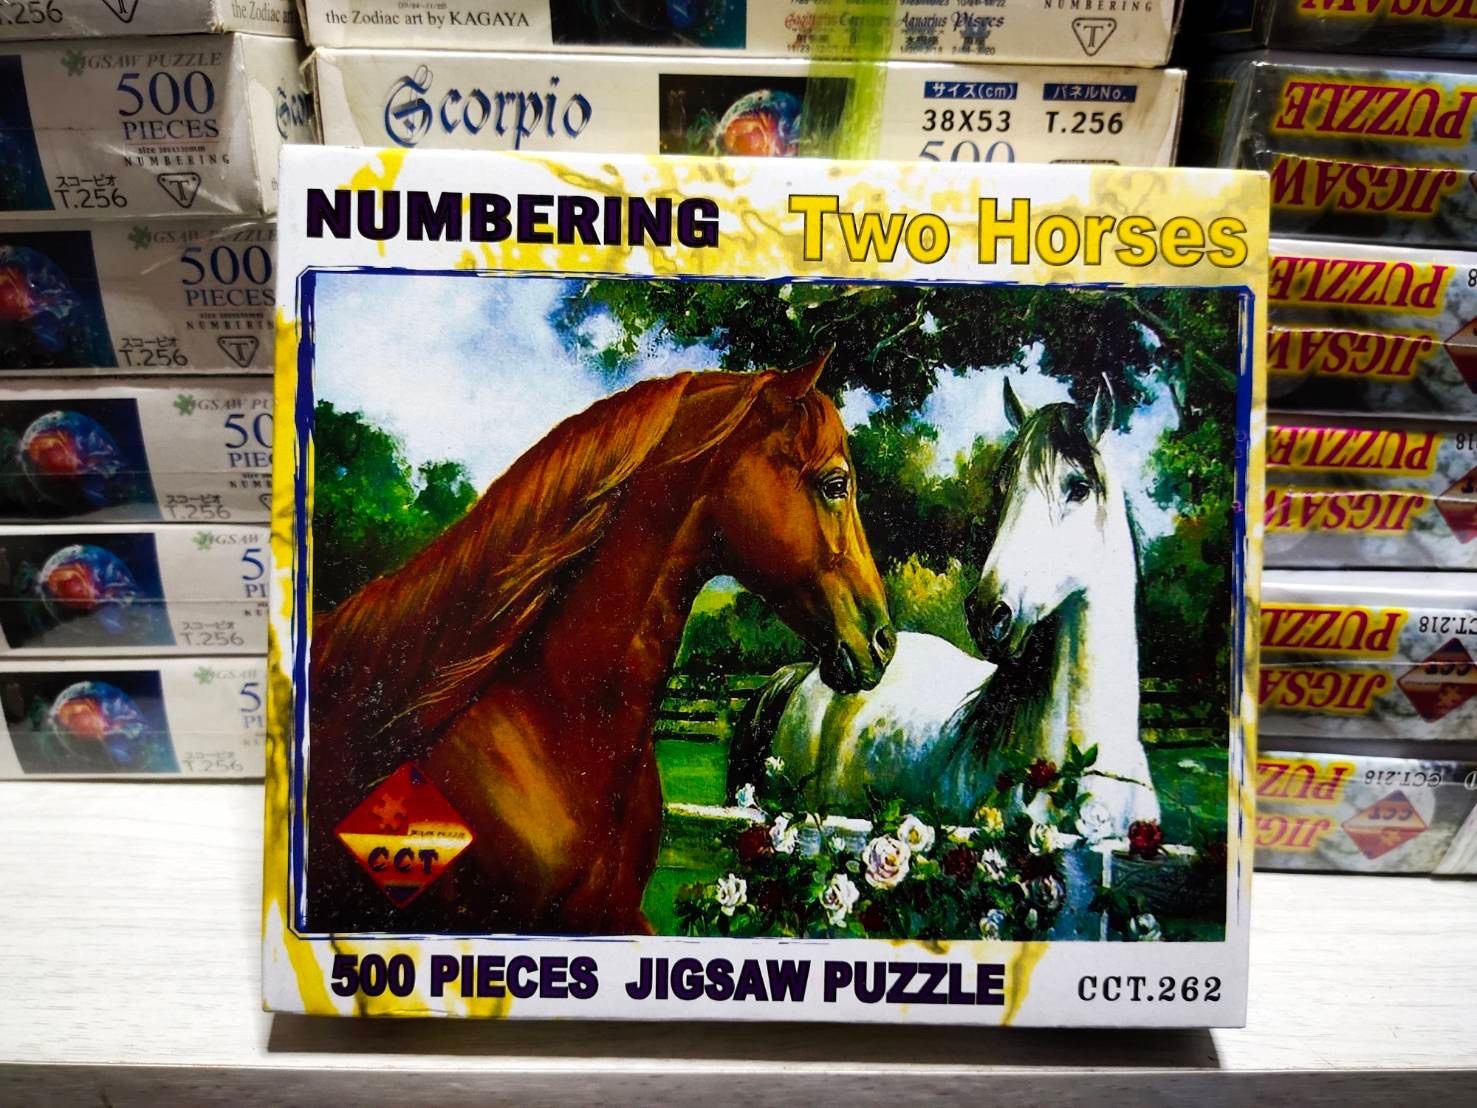 จิ๊กซอว์ 500 ชิ้น ภาพสัตว์ ม้าลาย jigsaw Puzzle ตัวต่อ จิ๊กซอ สำหรับผู้ใหญ่ ประดับตกแ ต่งบ้าน ของขวัญ ของที่ระลึก